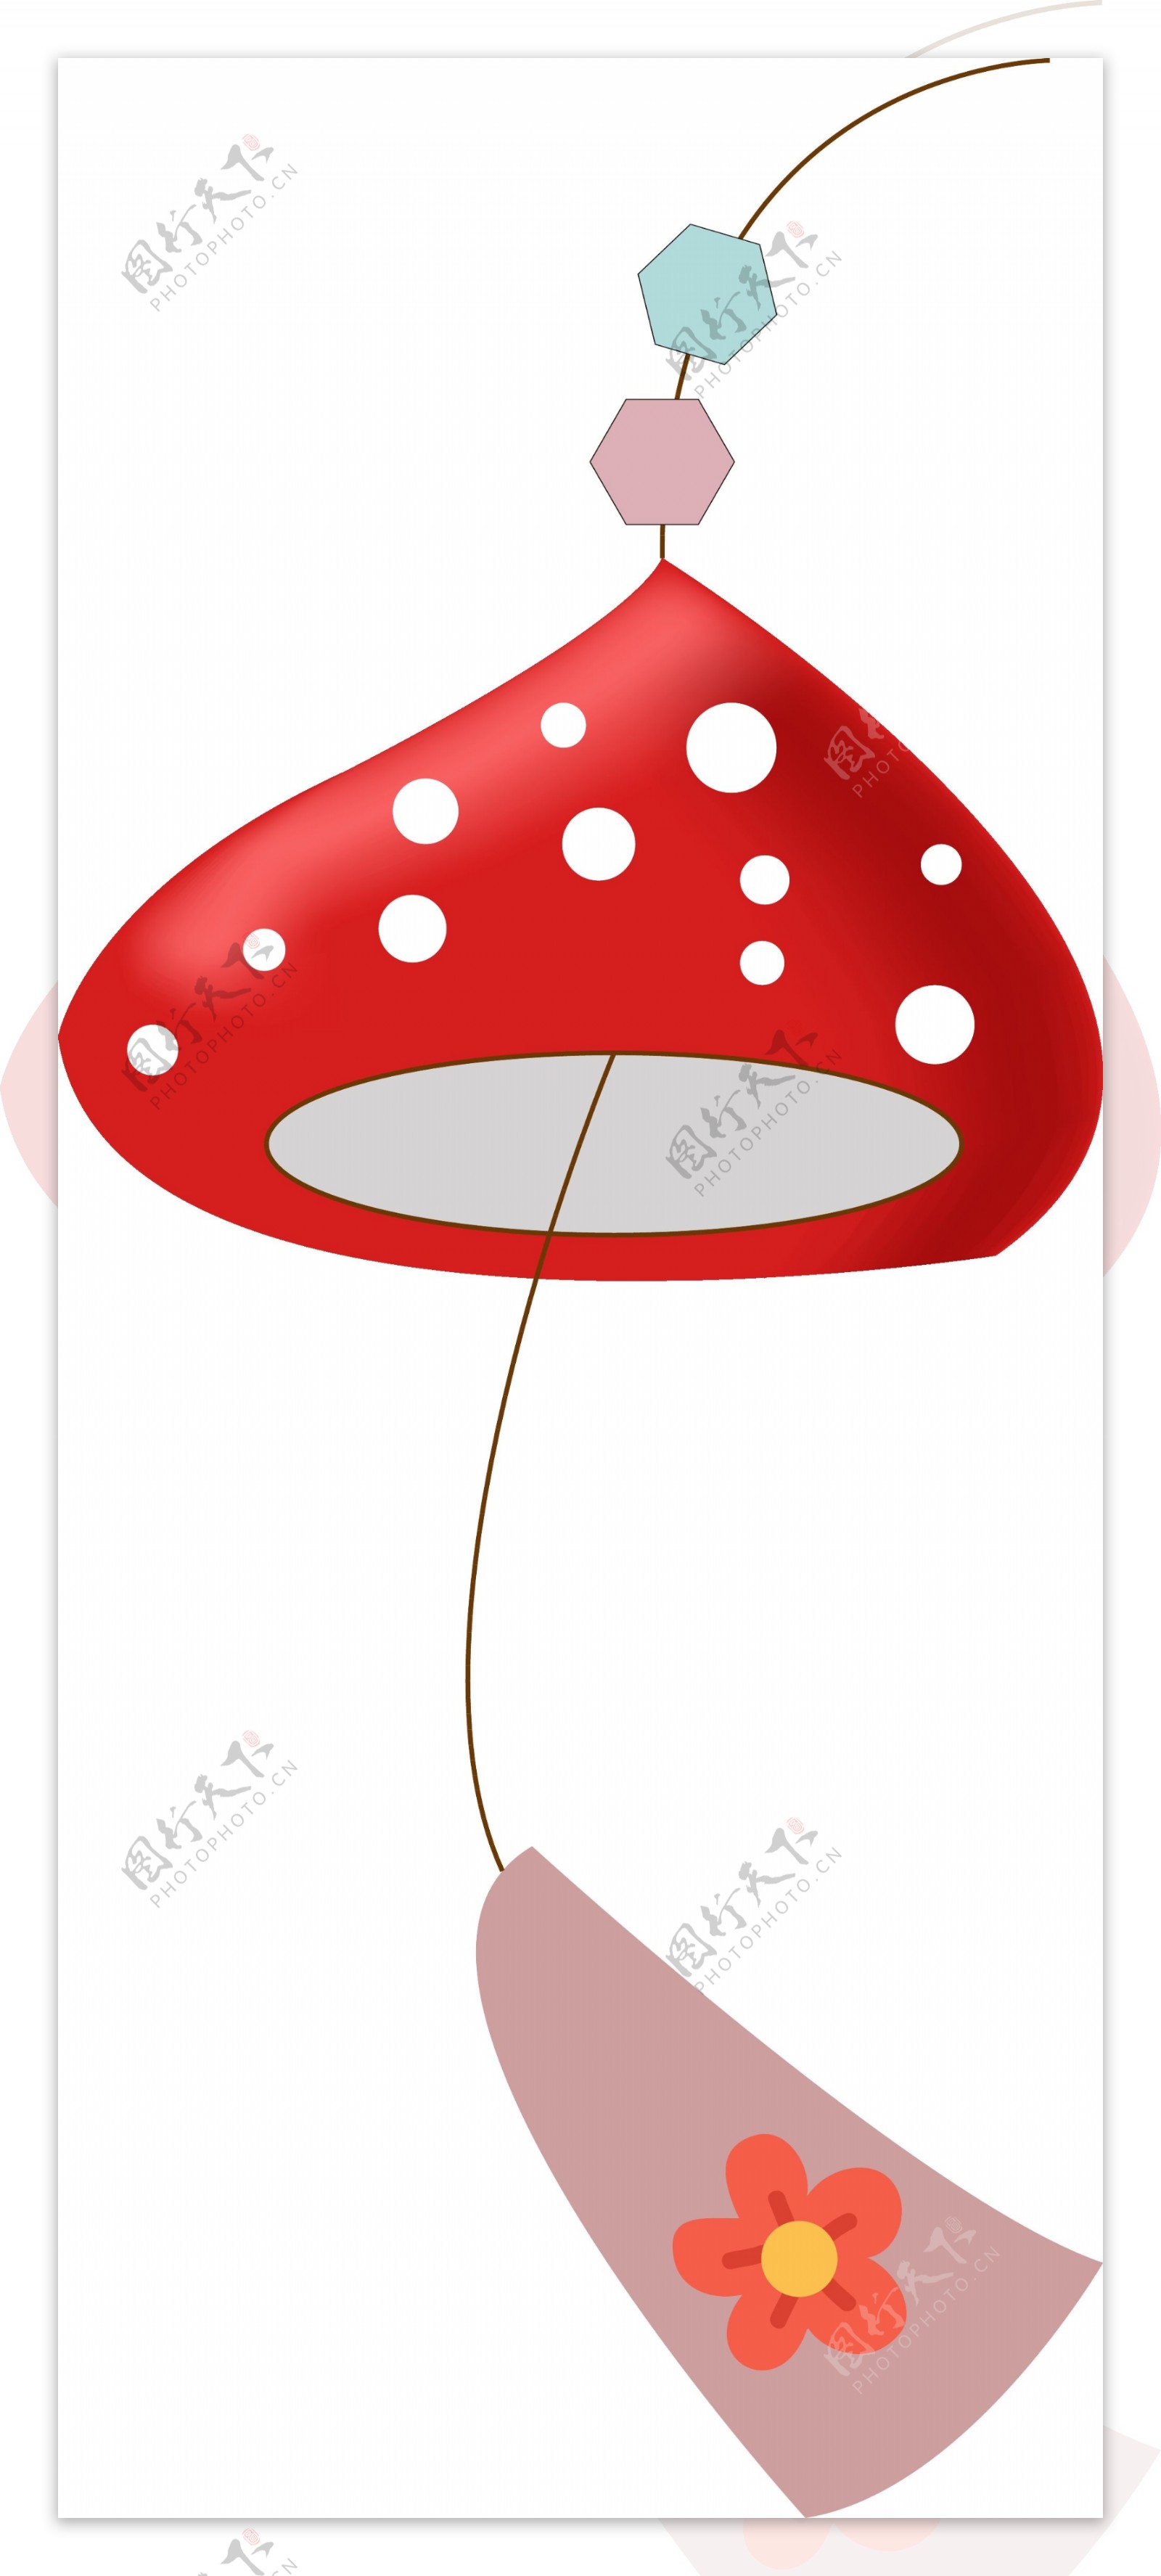 红色蘑菇风铃